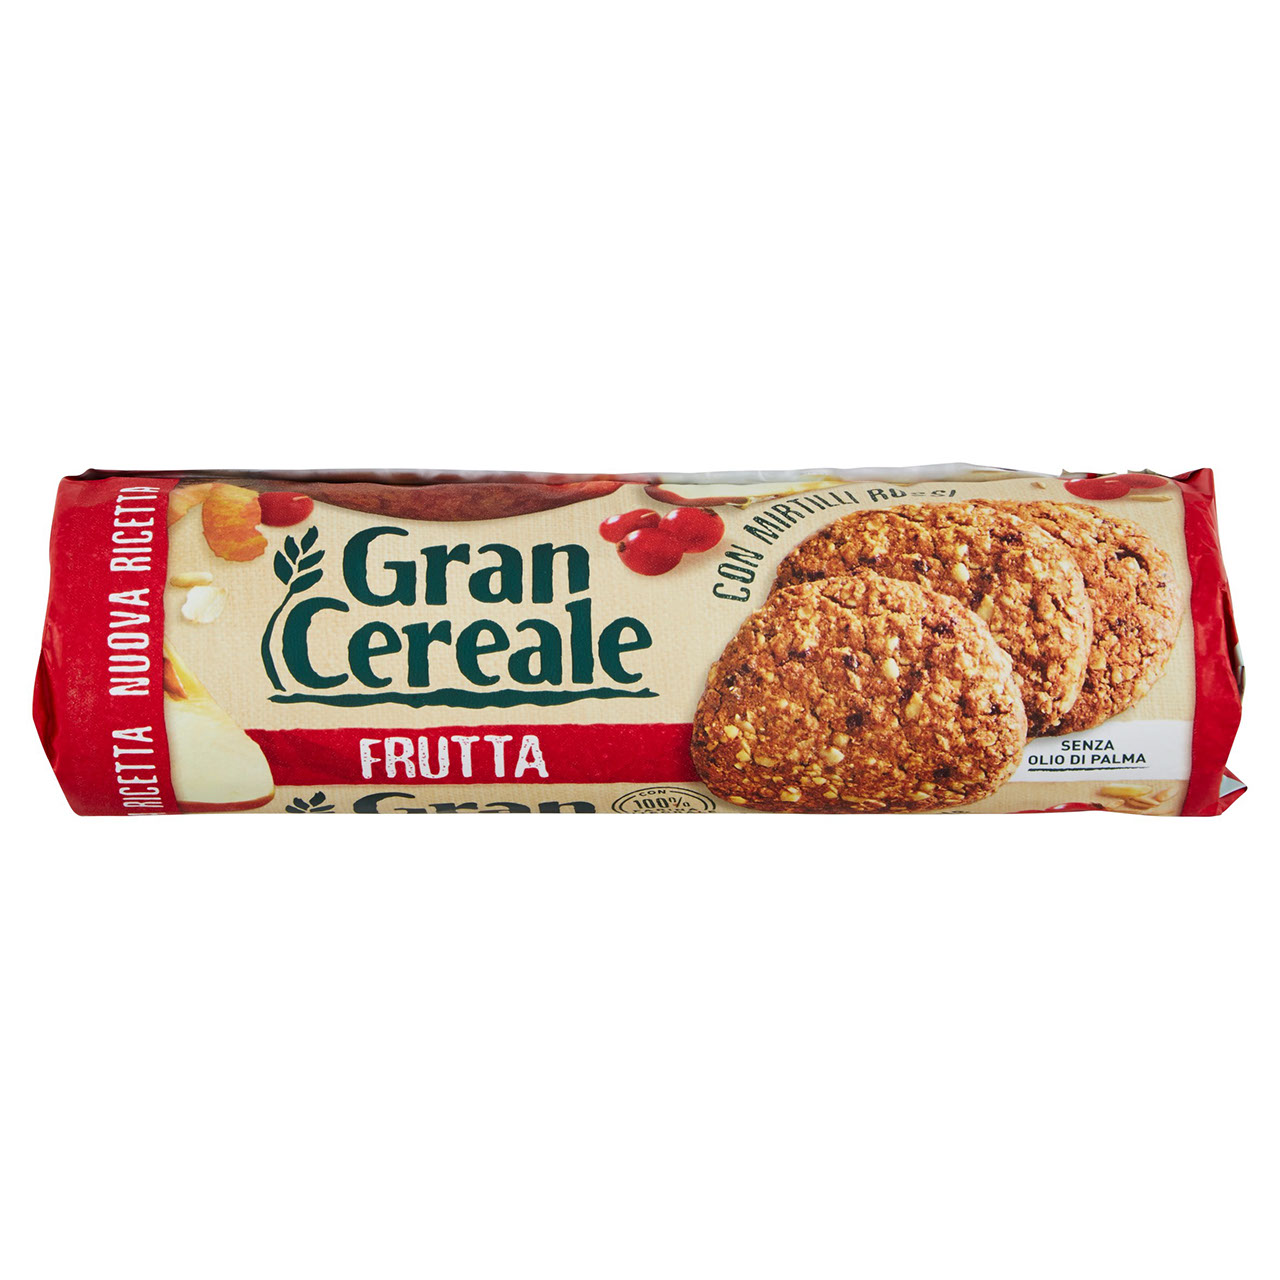 https://spesaonline.conad.it/assets/products/gran-cereale-biscotti-gran-cereale-digestive-biscotti-con-malto-dorzo-tubo-250-g--10731576/Angolato-Parte-anteriore-superiore.jpeg/renditions/cq5dam.web.1280.1280.jpeg